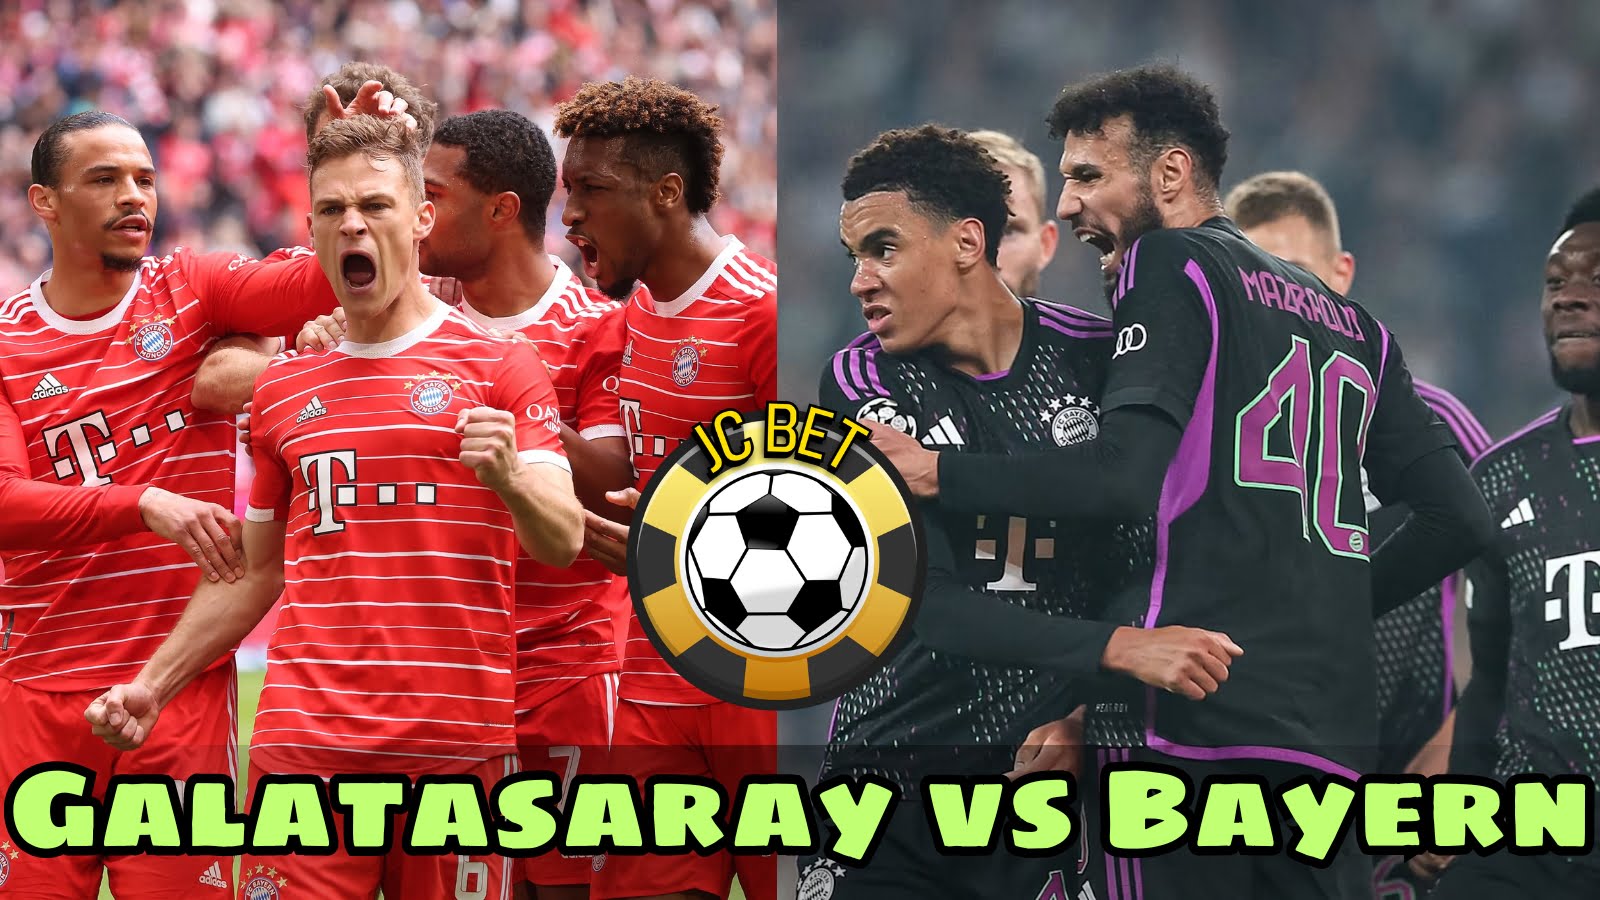 Galatasaray vs Bayern